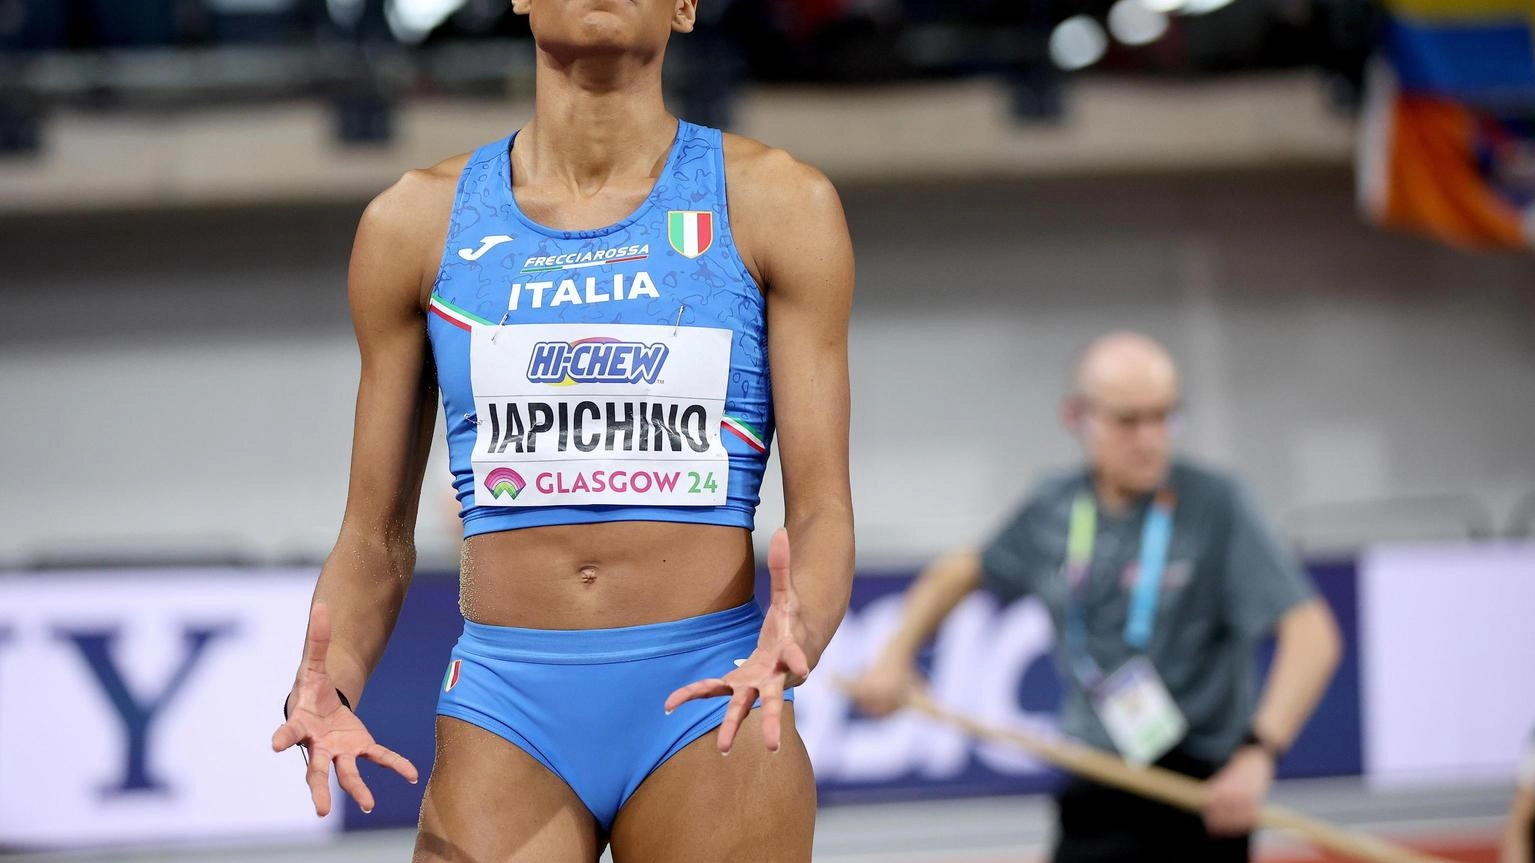 Europei atletica: Iapichino, per il bronzo serve almeno 6,85